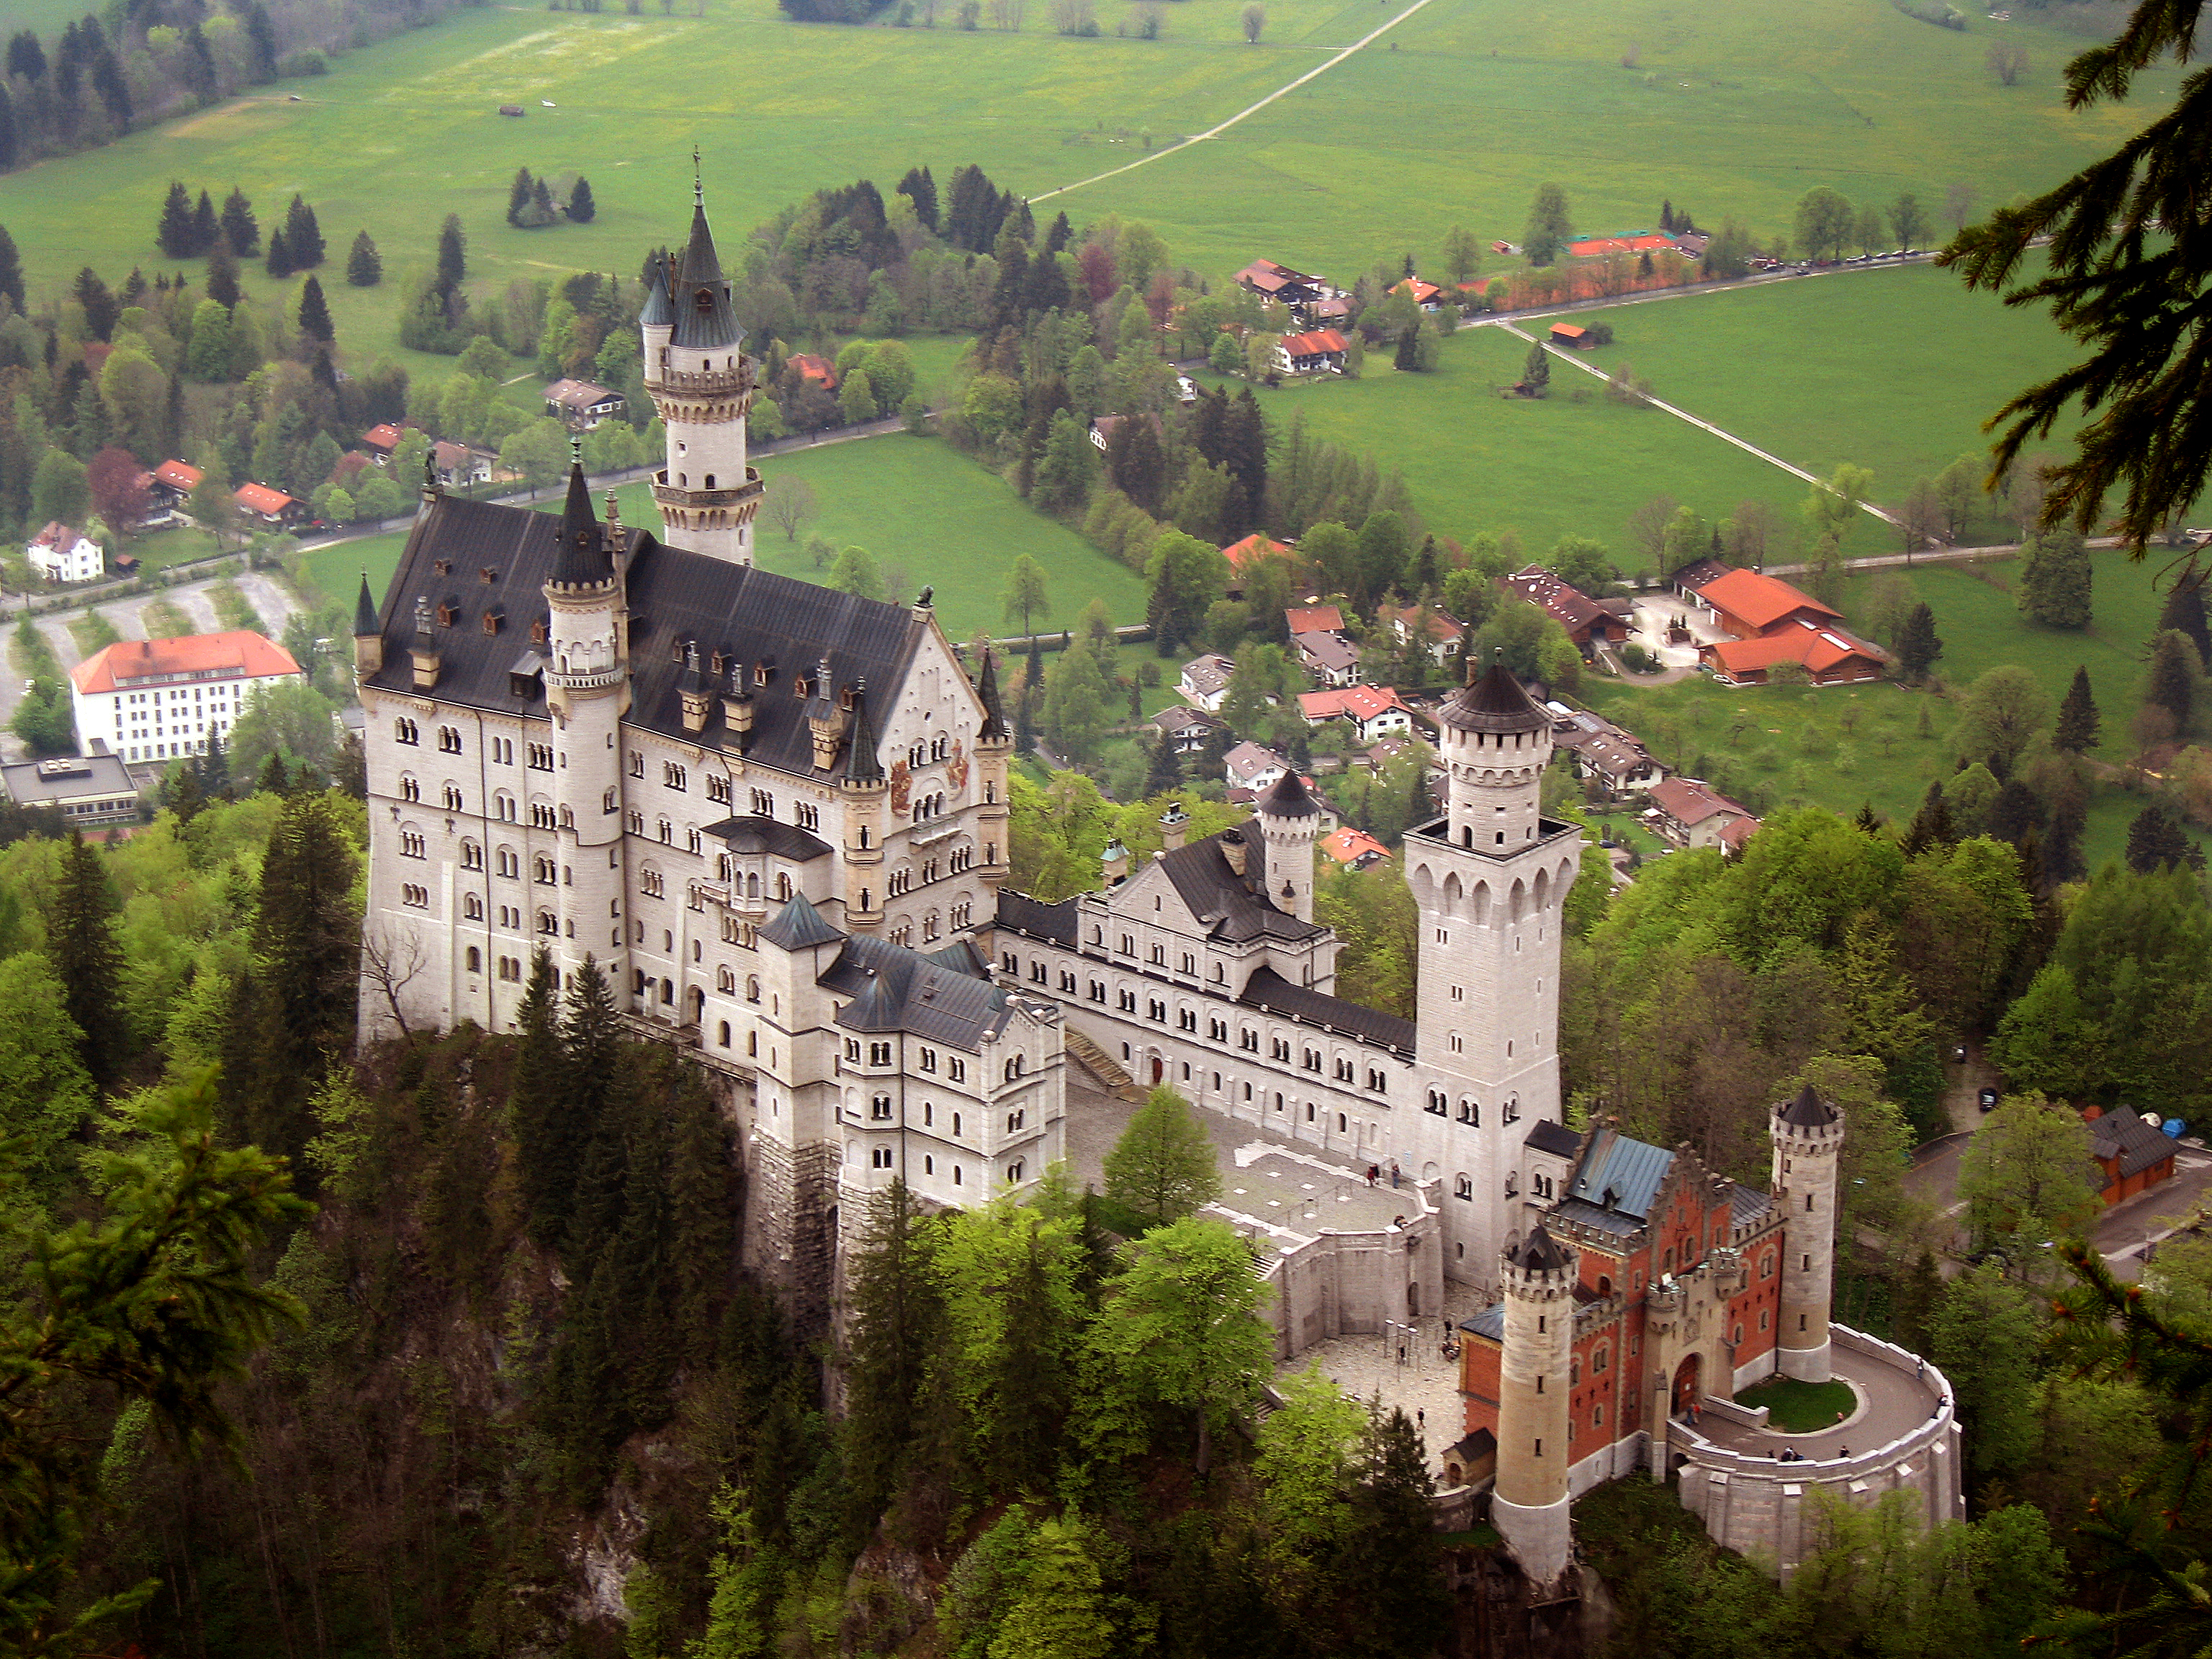 File:Neuschwanstein castle.jpg - Wikimedia Commons